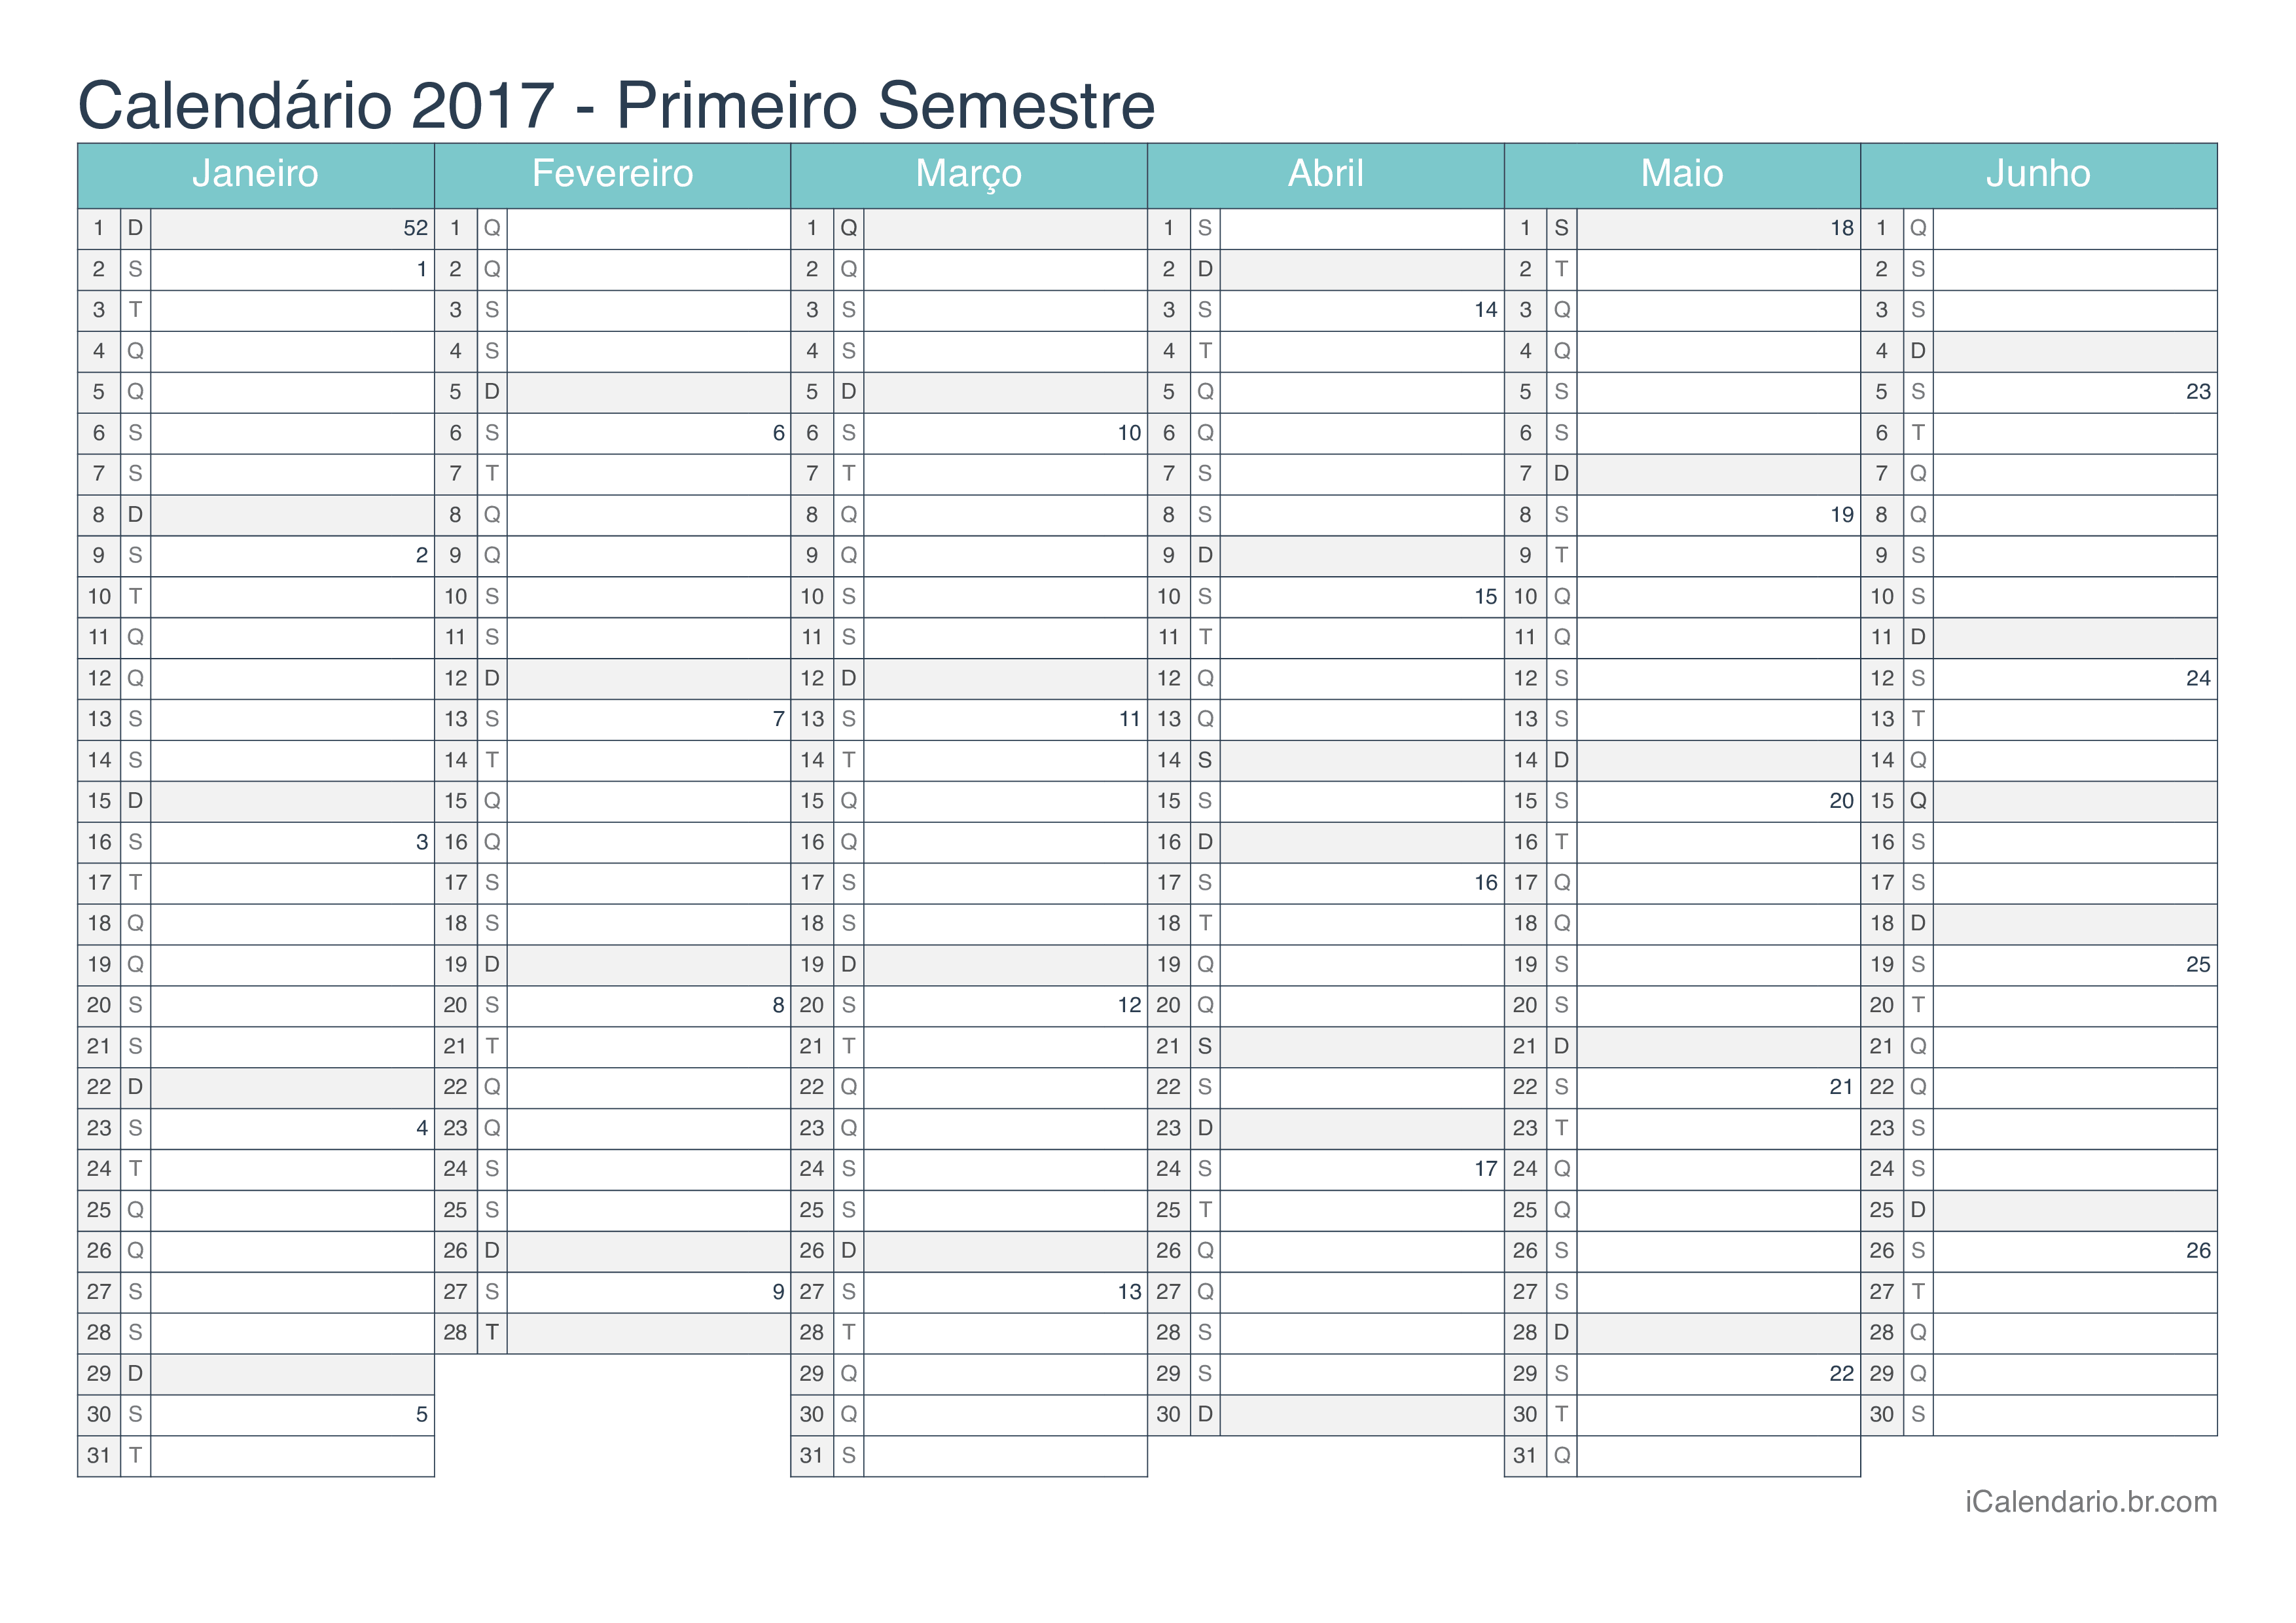 Calendário por semestre com números da semana 2017 - Turquesa